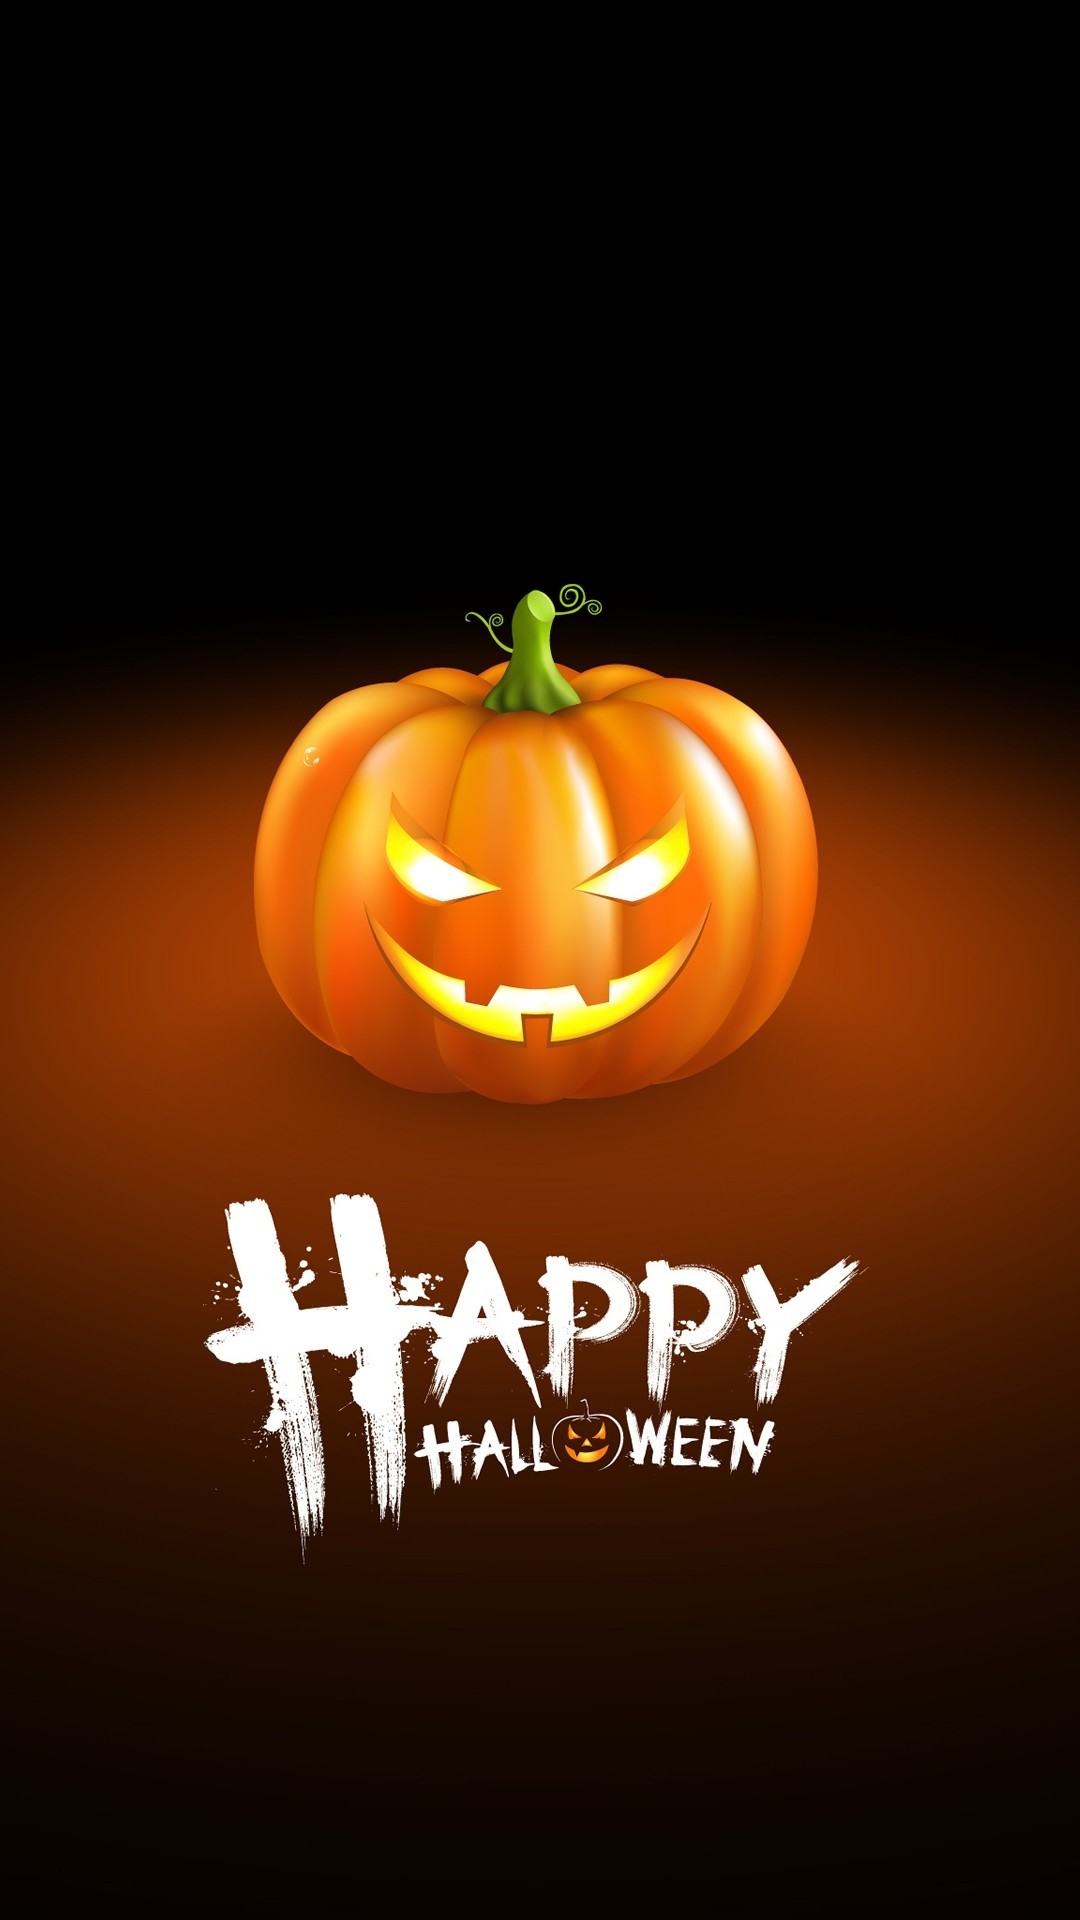 1080x1920 Halloween Pumpkin Iphone 8 Wallpaper Download | Iphone Wallpapers  throughout Halloween Pumpkin Iphone Background